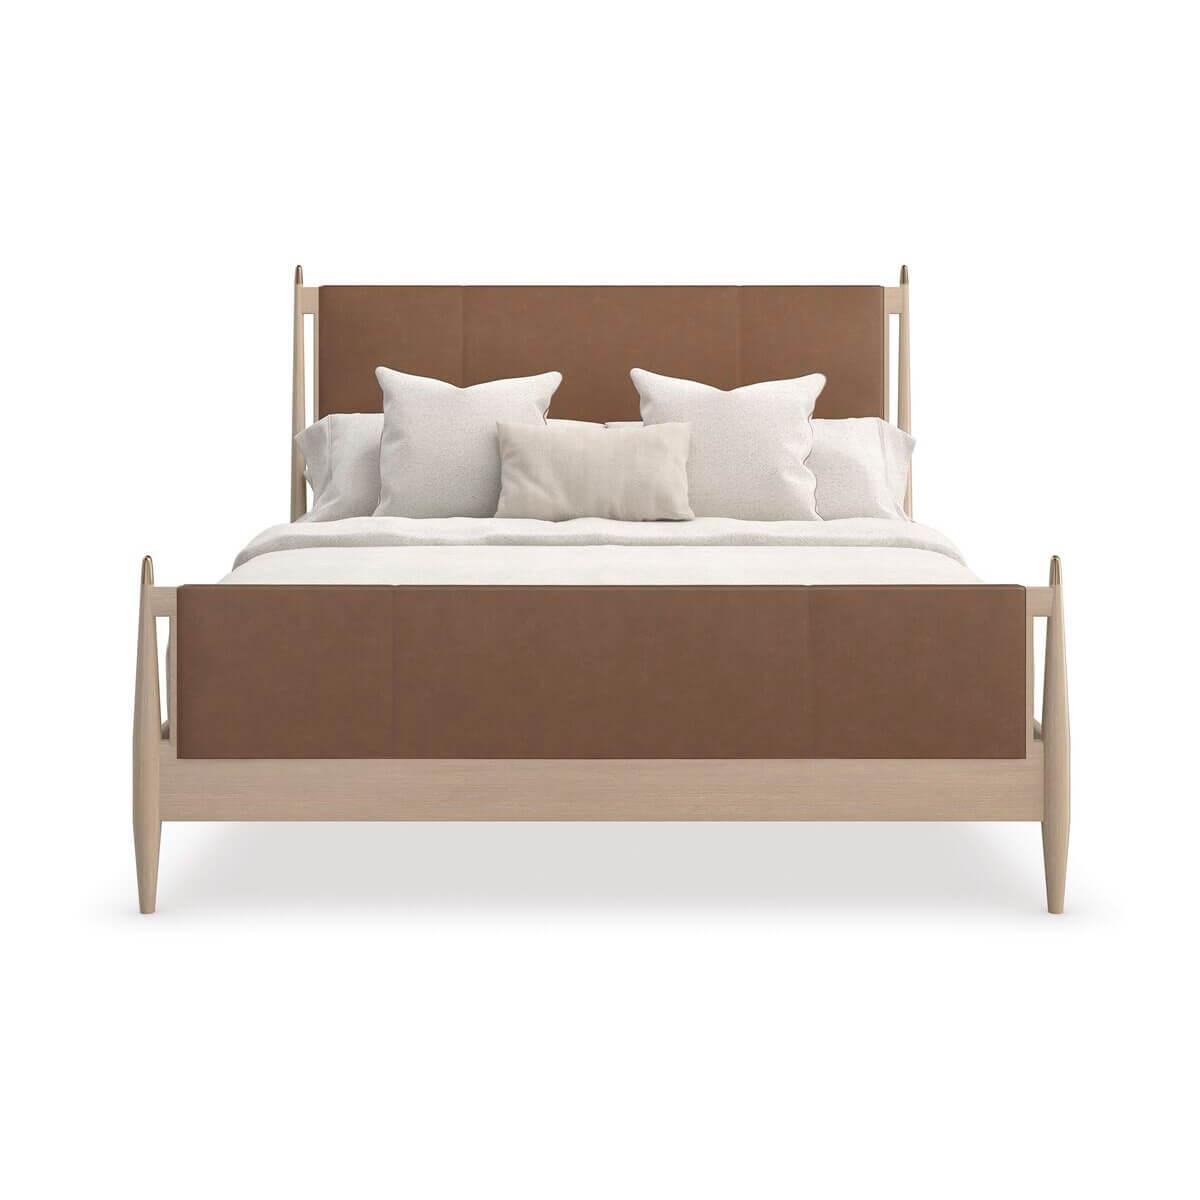 Avec des lignes simples et modernes et une riche utilisation des matériaux, le lit apporte une cadence simple mais sophistiquée aux intérieurs des chambres à coucher. Taillée dans un cuir somptueux de couleur camel, sa tête de lit épurée de style